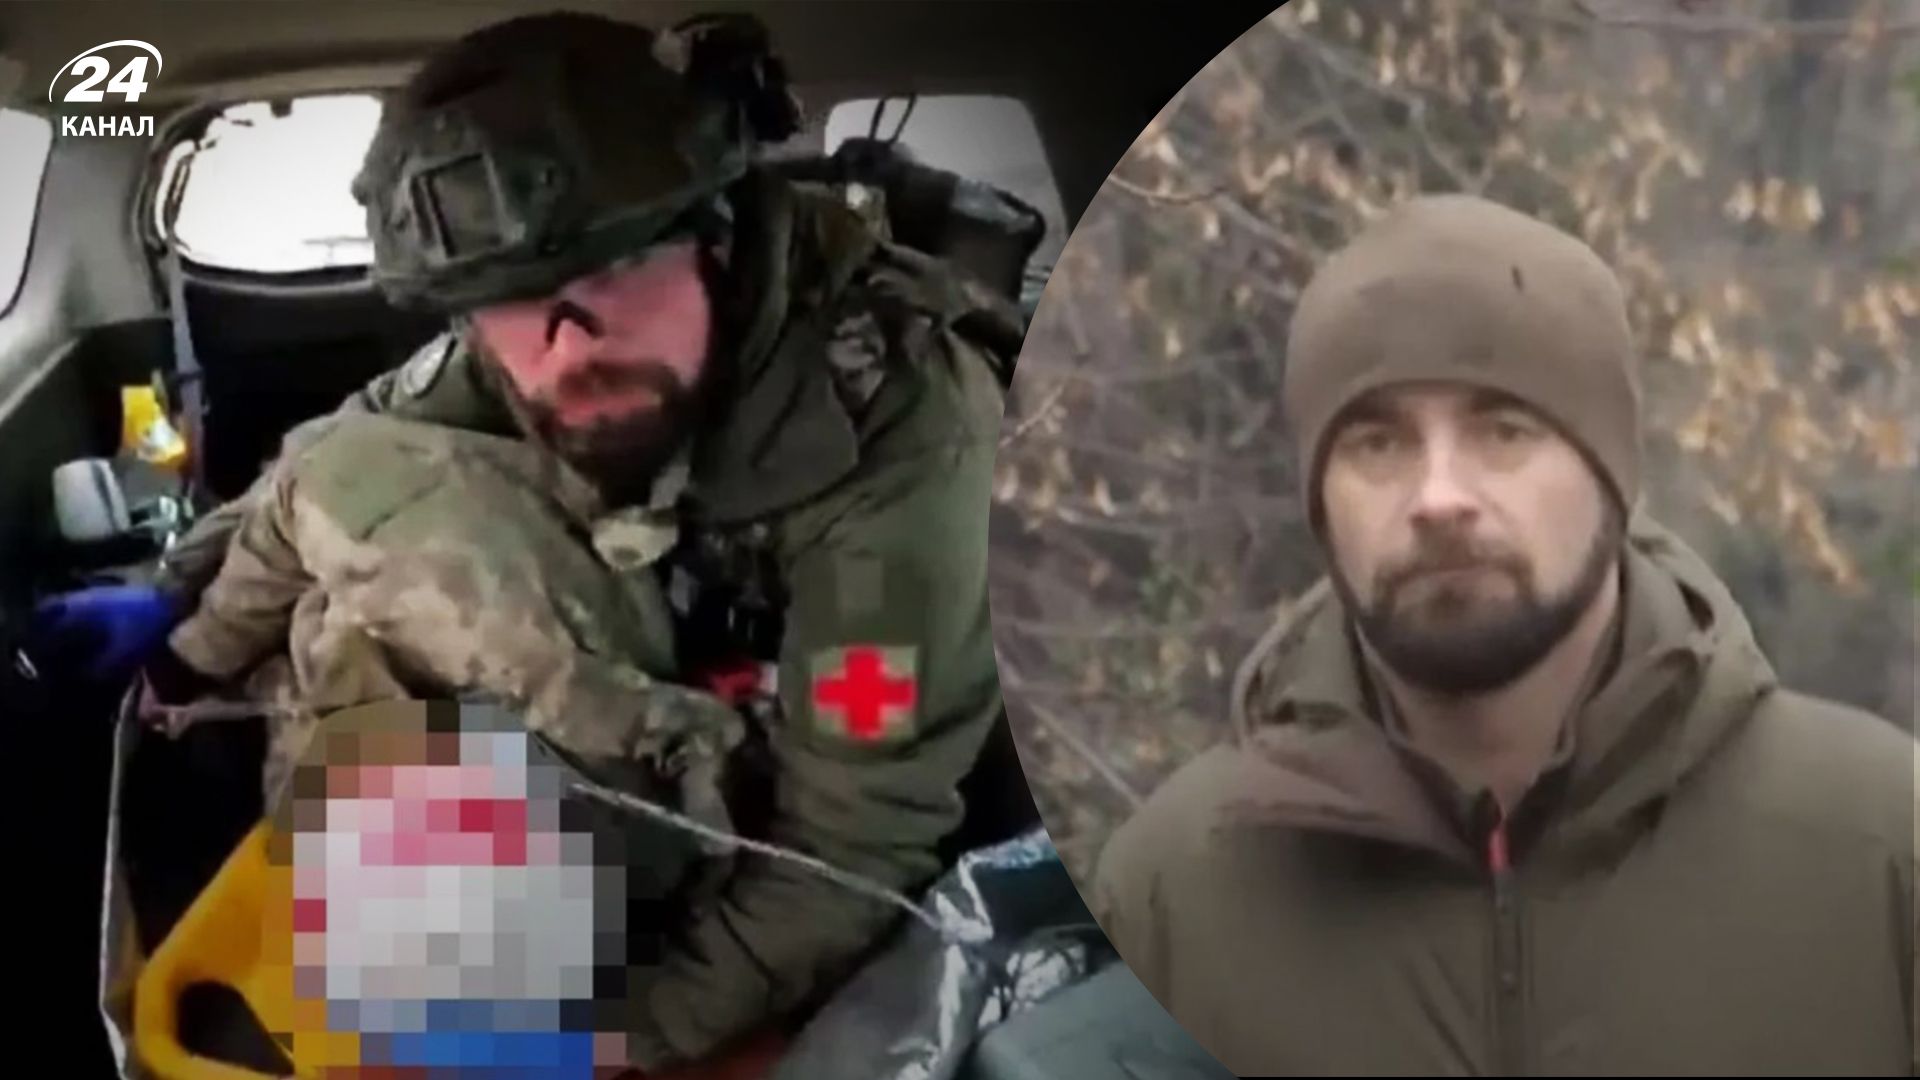 польський парамедик розповів про воїна, відео рятунку якого облетіло мережу